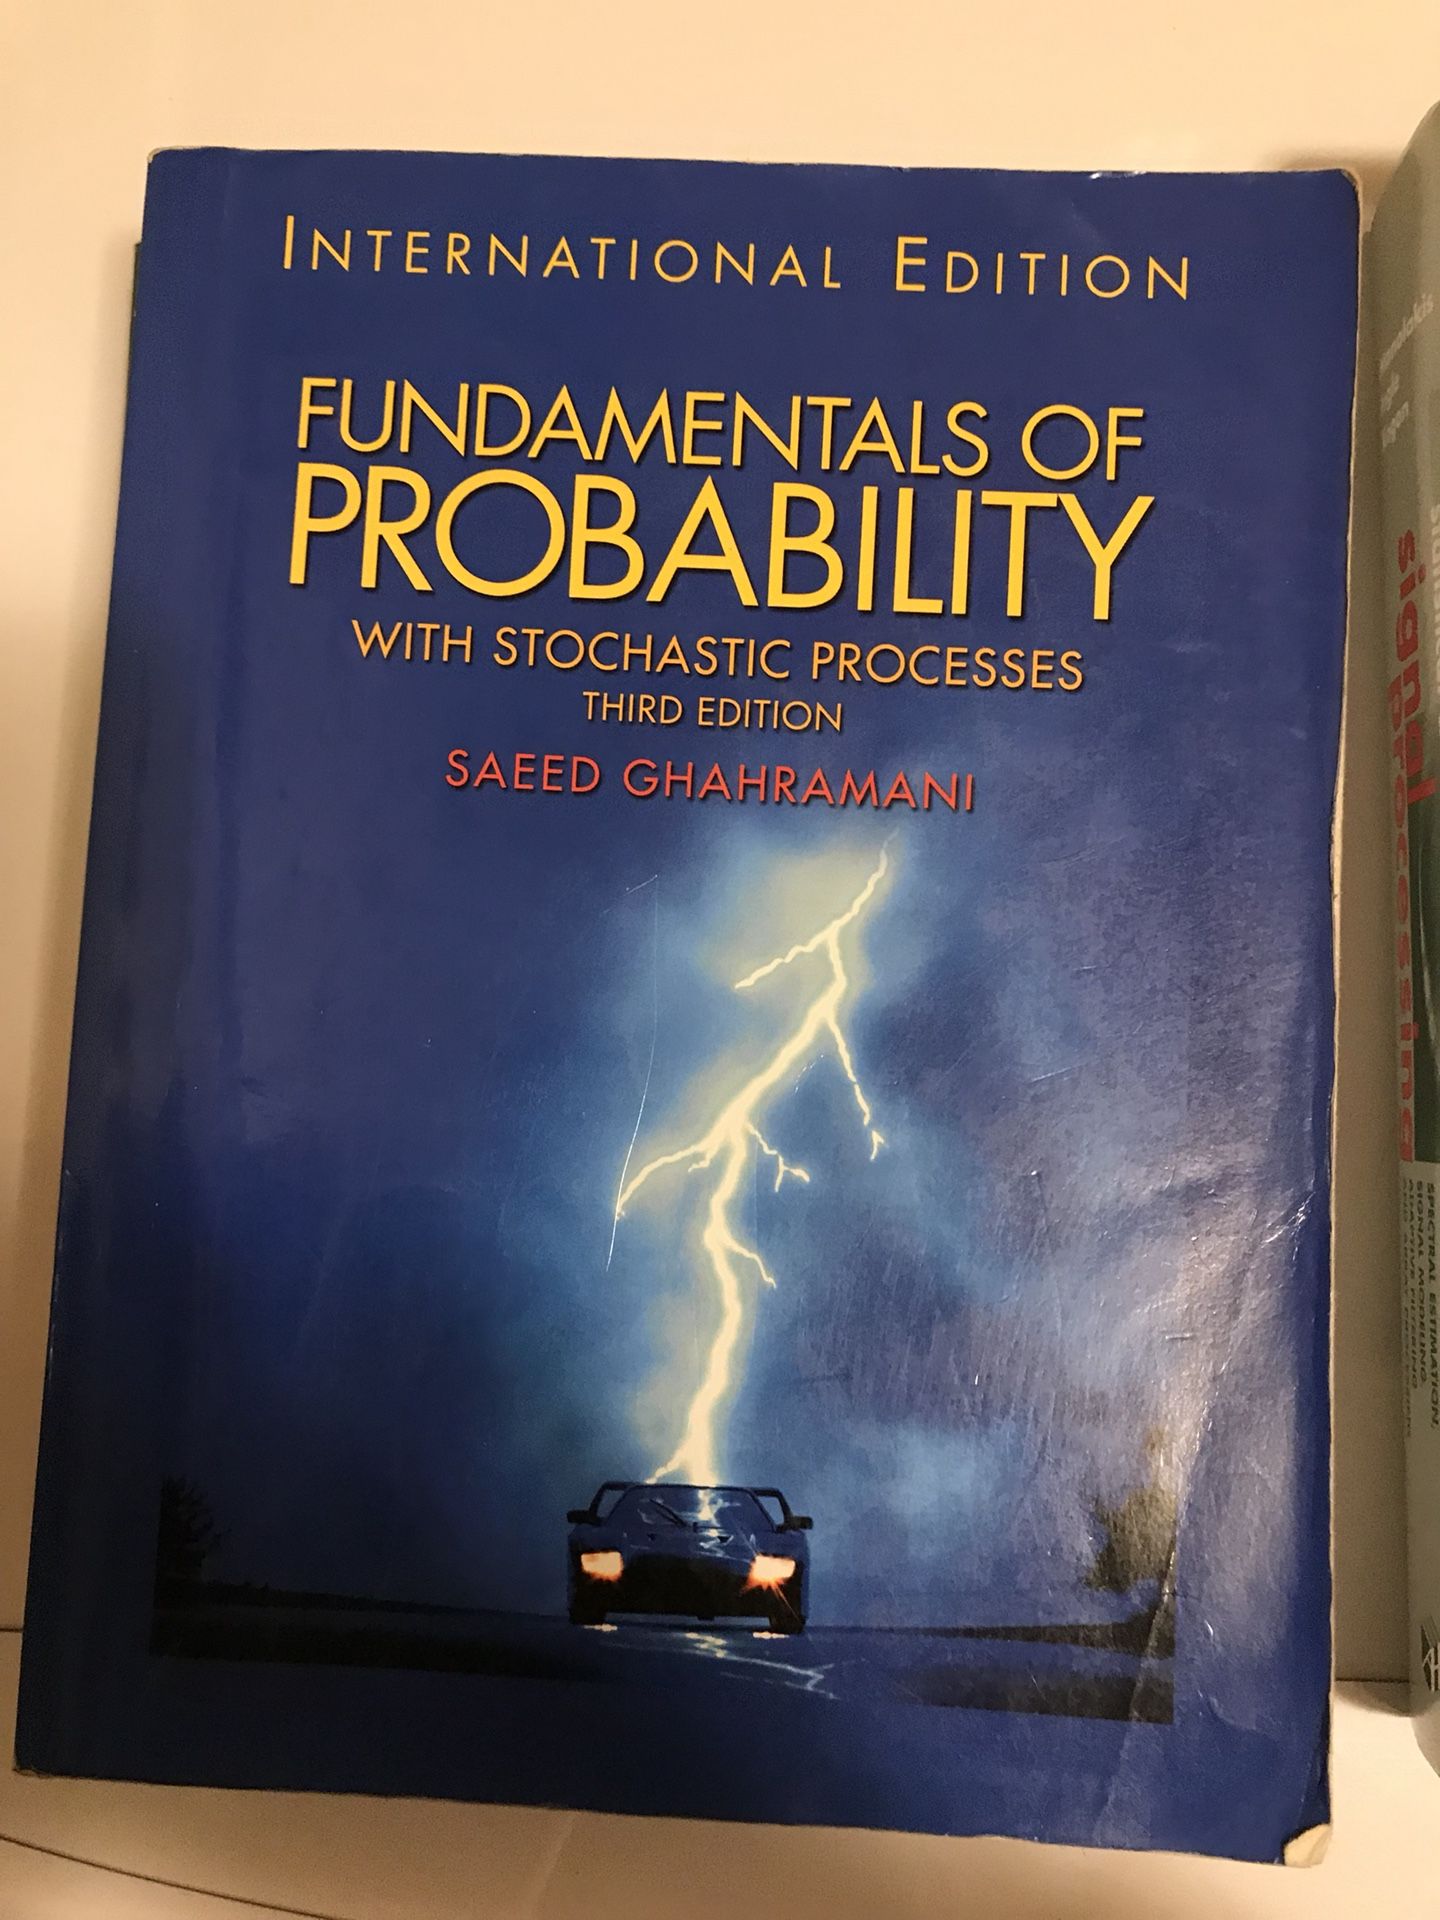 Fundamental of Probability